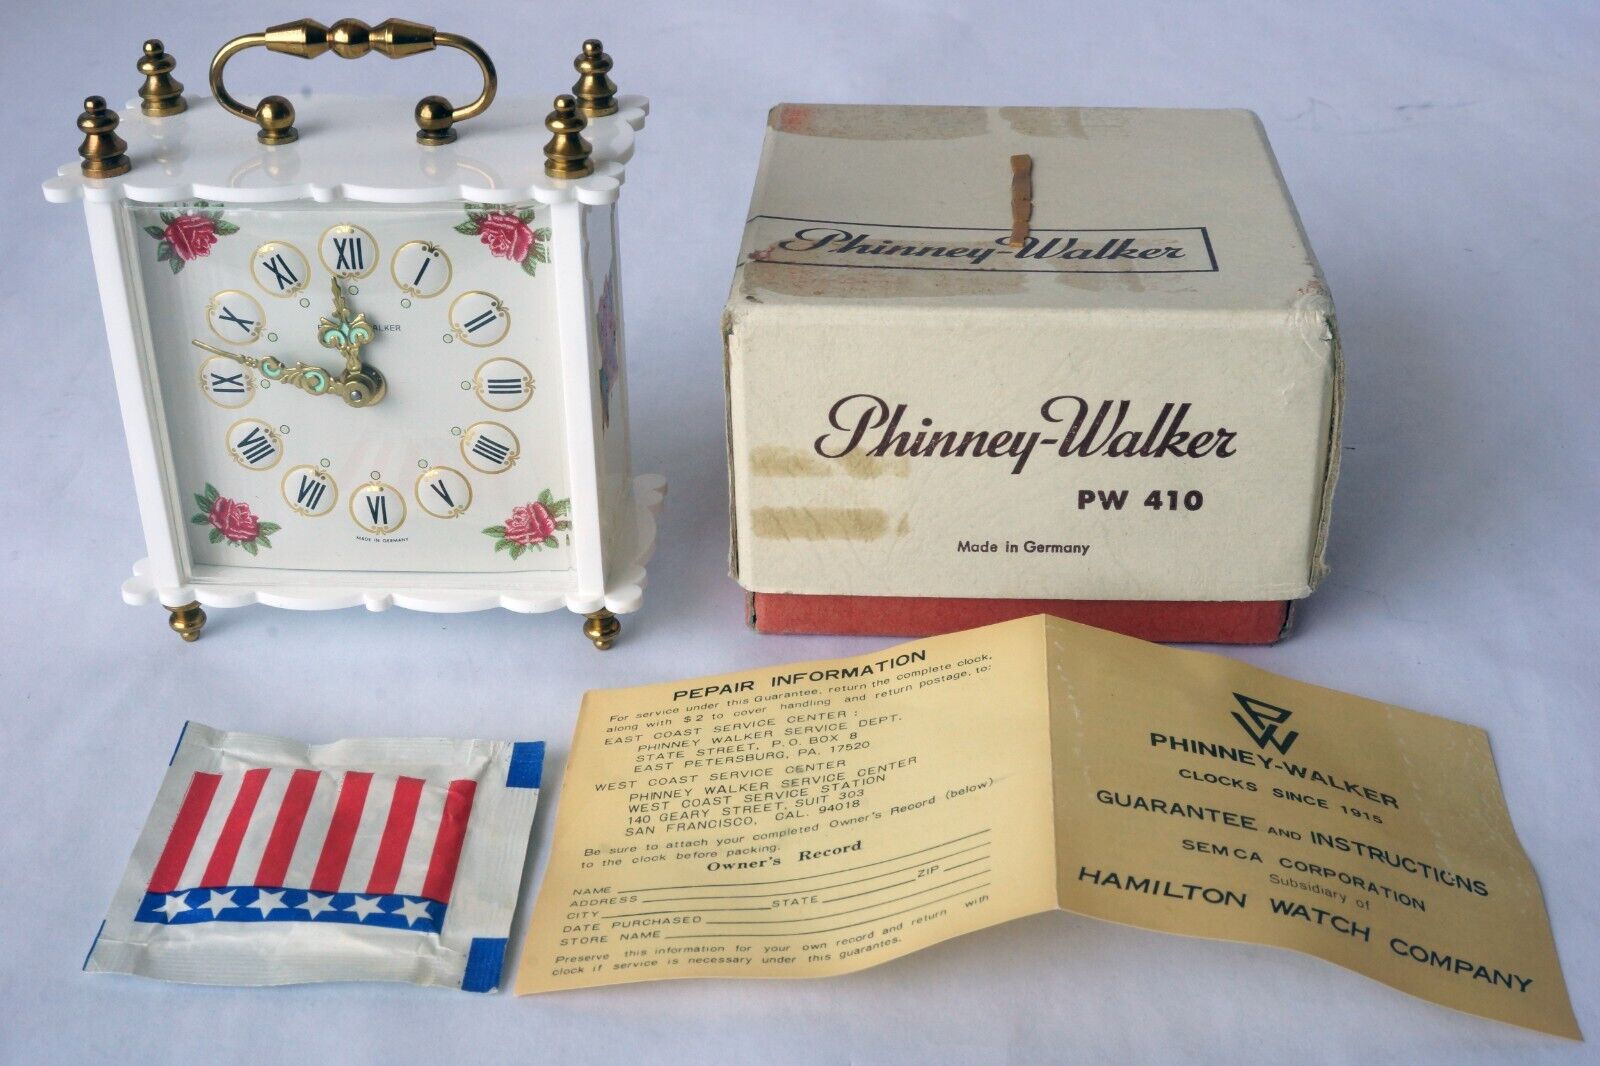 Vintage Phinney-Walker Germany Windup Alarm Clock PW 410 w/ Box Unused Work Well